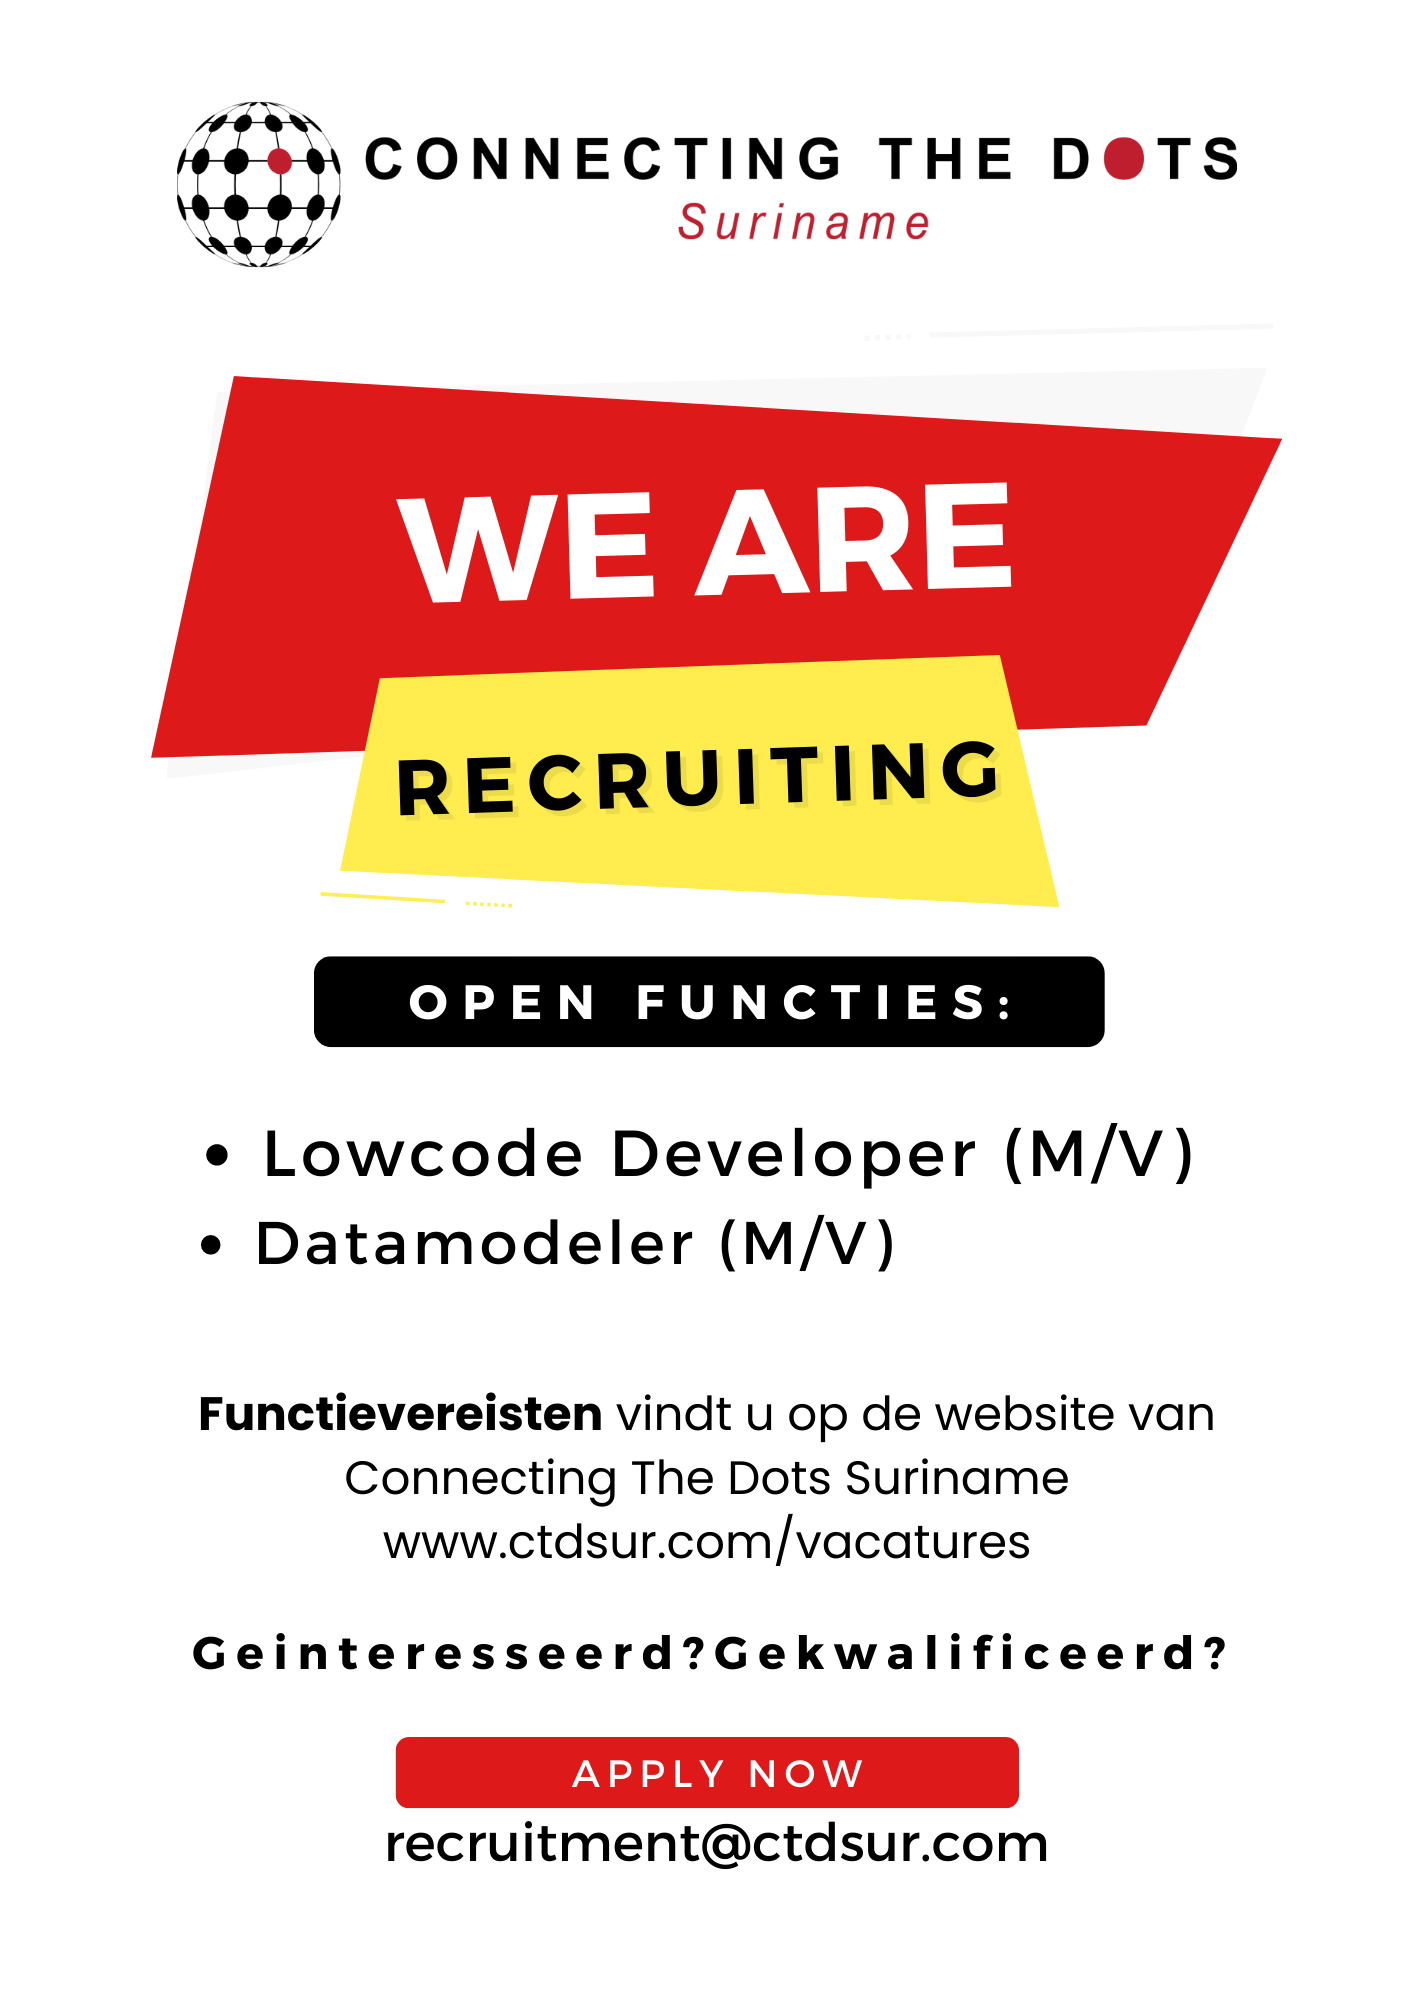 We are recruiting! Open functies: lowcode developer (m/v) en datamodeler (m/v). Functievereisten vind u op de website.